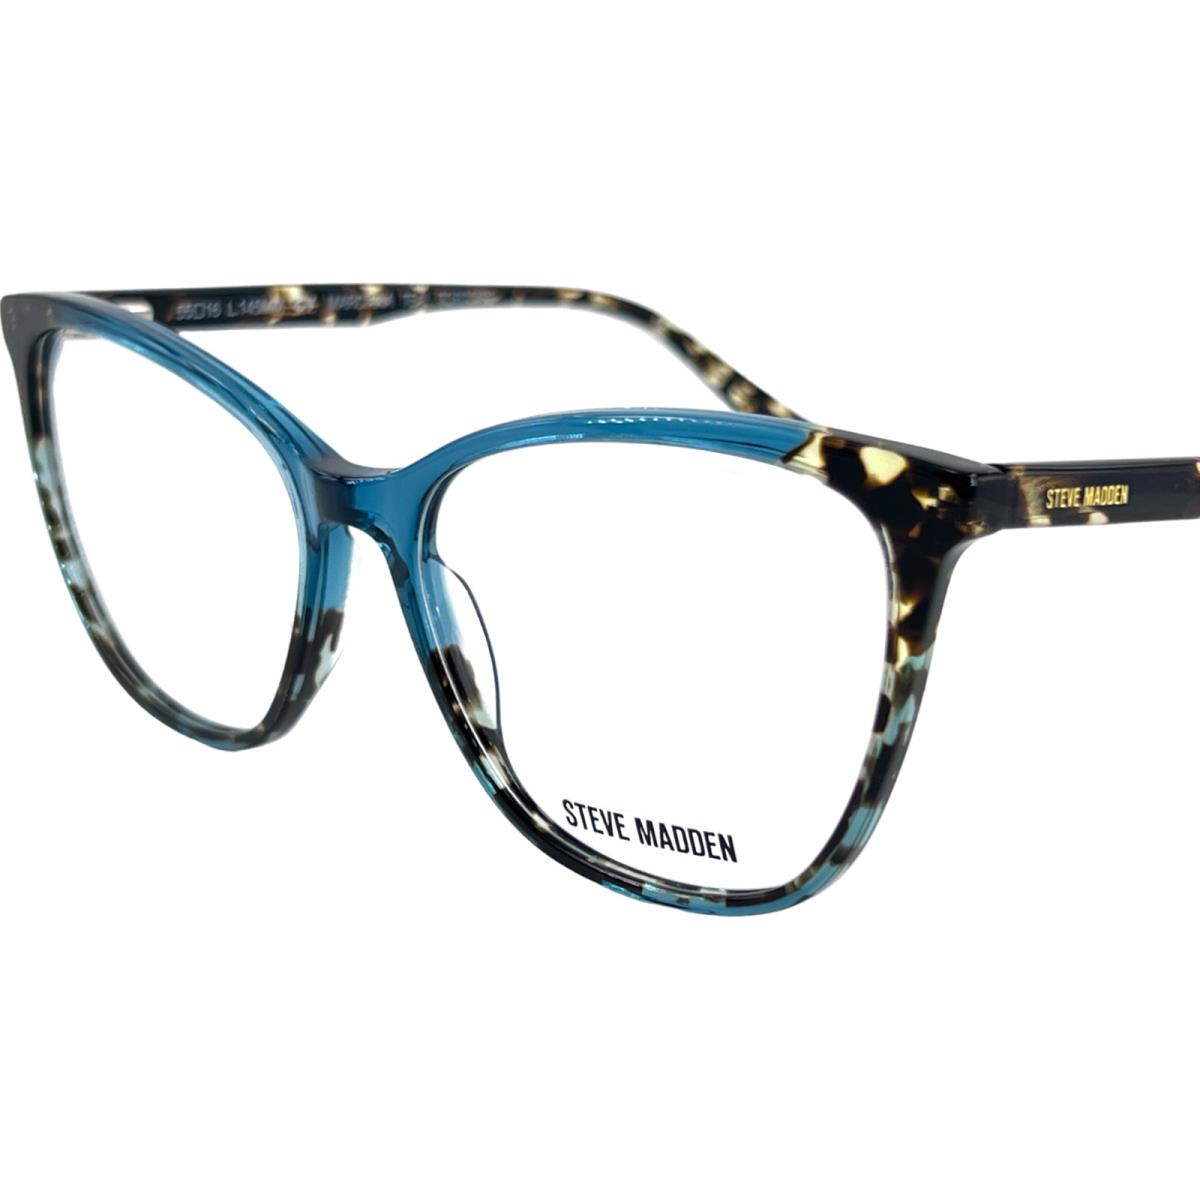 Steve Madden Marciana Women`s Plastic Eyeglass Frame Teal Tortoise 55-16 W/case